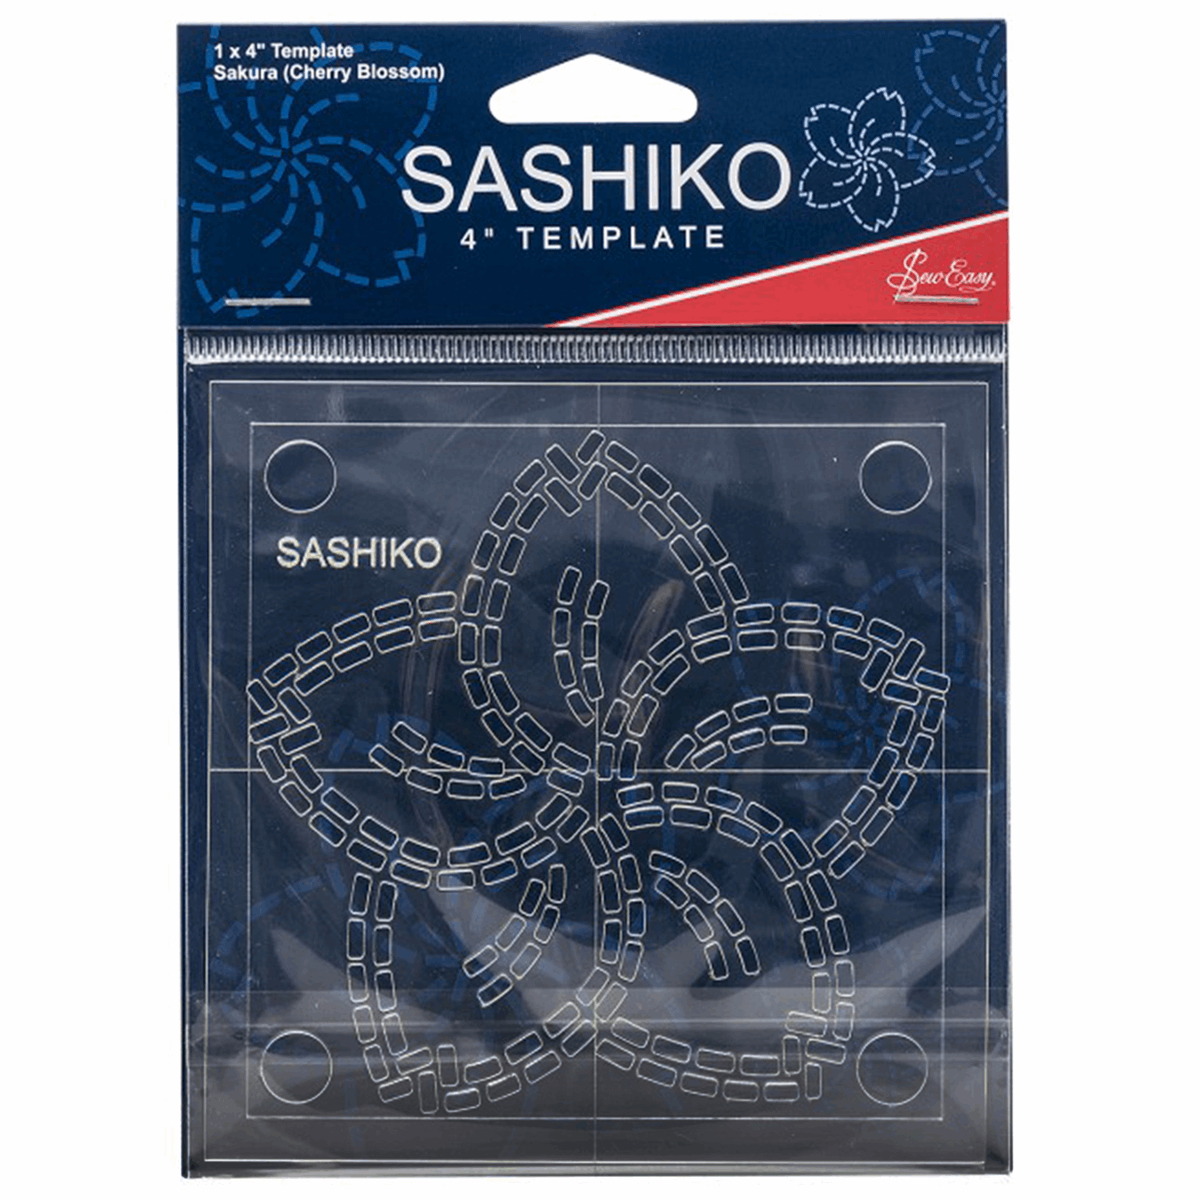 Sew Easy Sashiko Template - Sakura (Cherry Blossom)